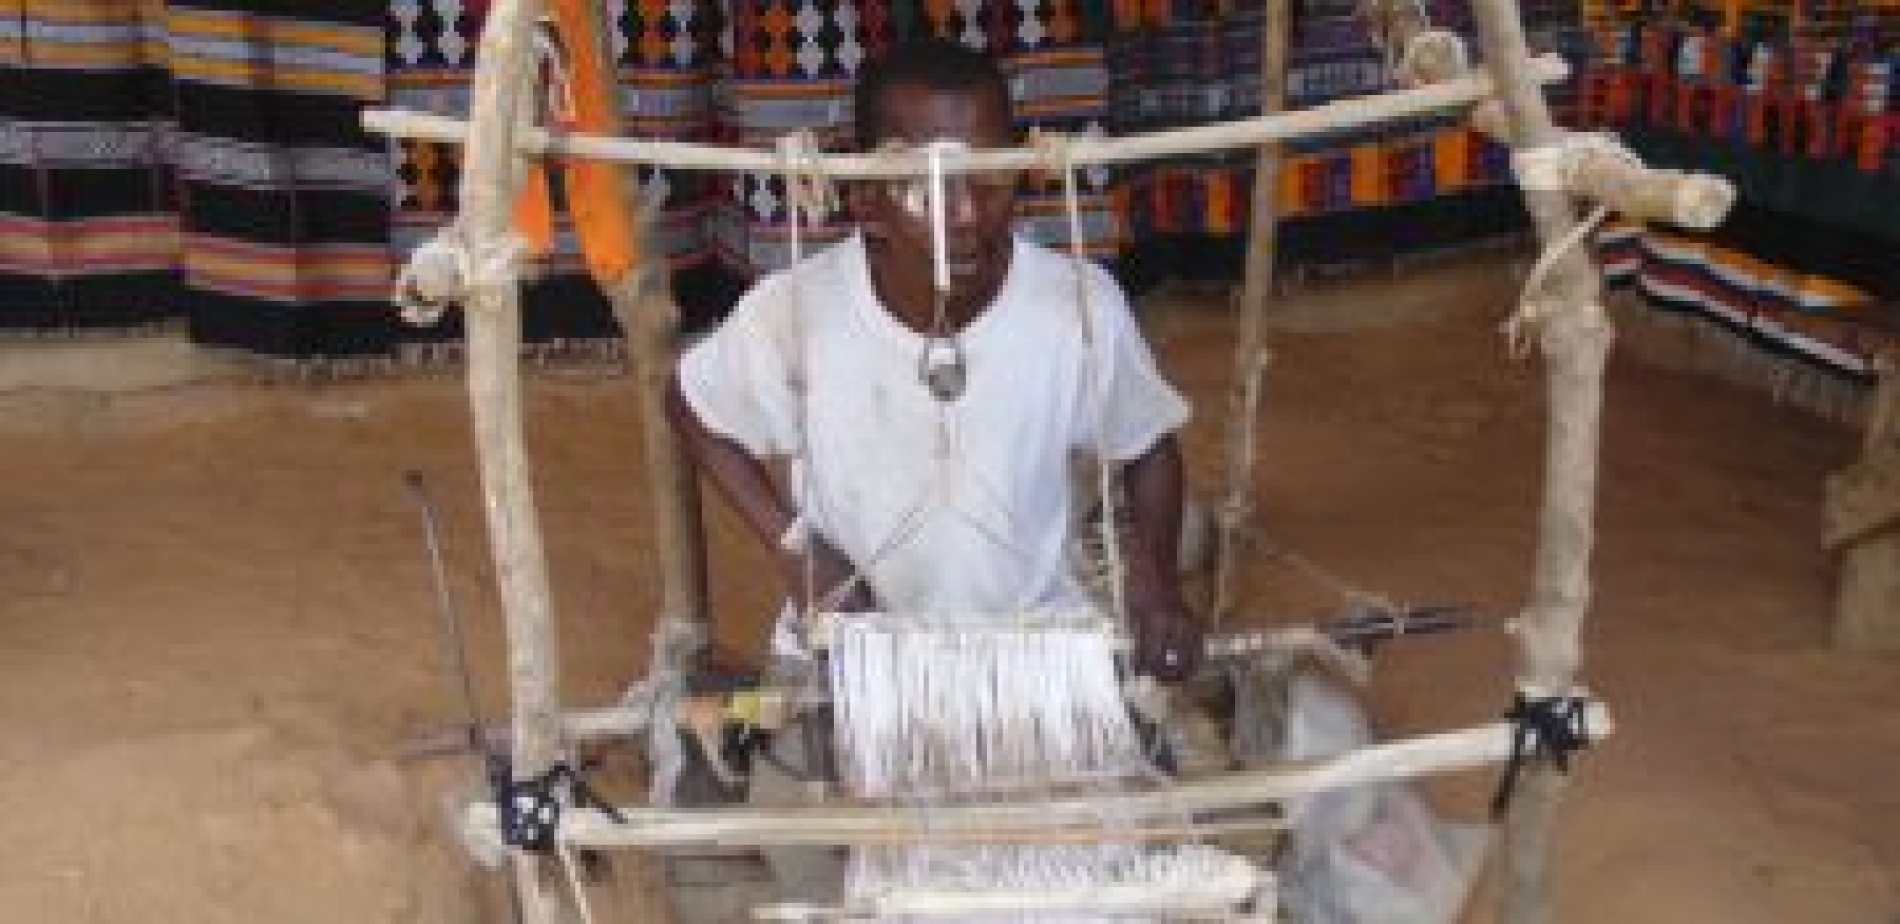 Le textile traditionnel africain : le tisserand, le métier et l’œuvre